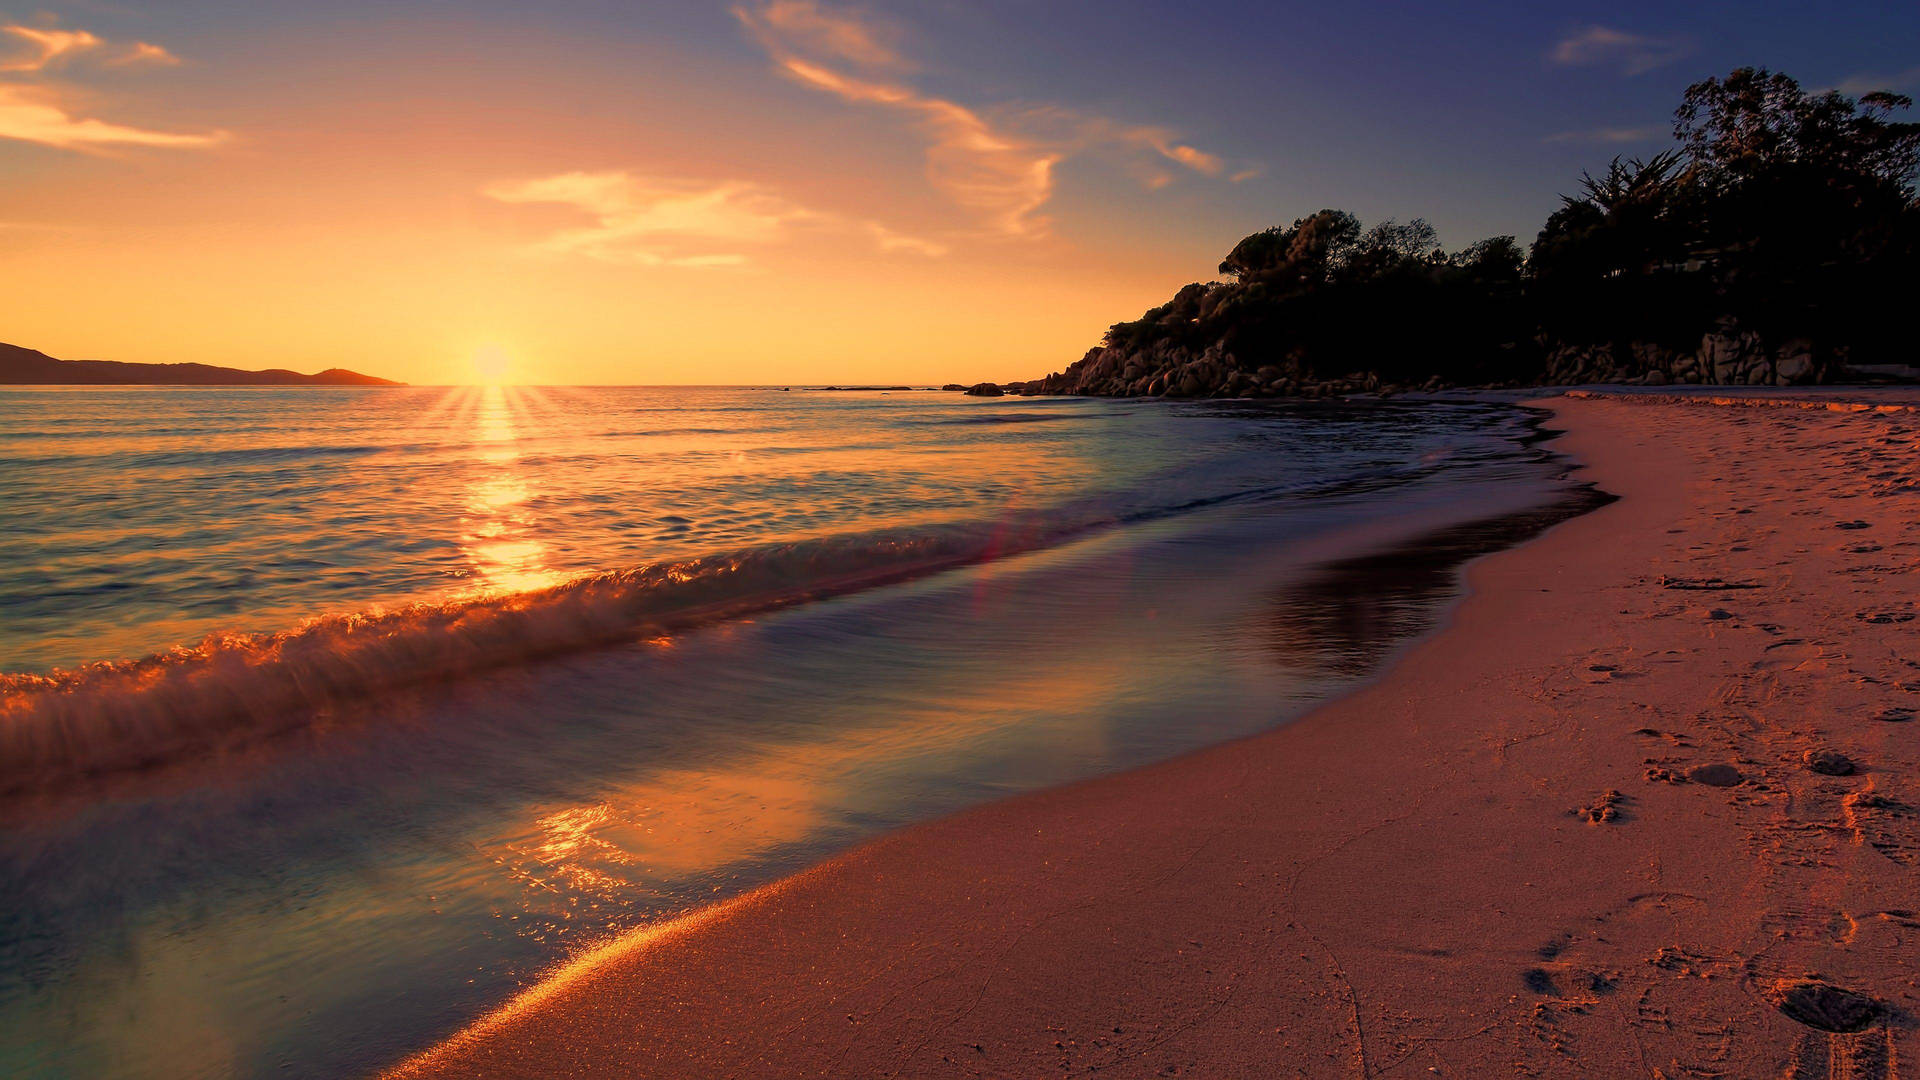 Free Beach Sunset Wallpaper Downloads, Beach Sunset Wallpaper for FREE